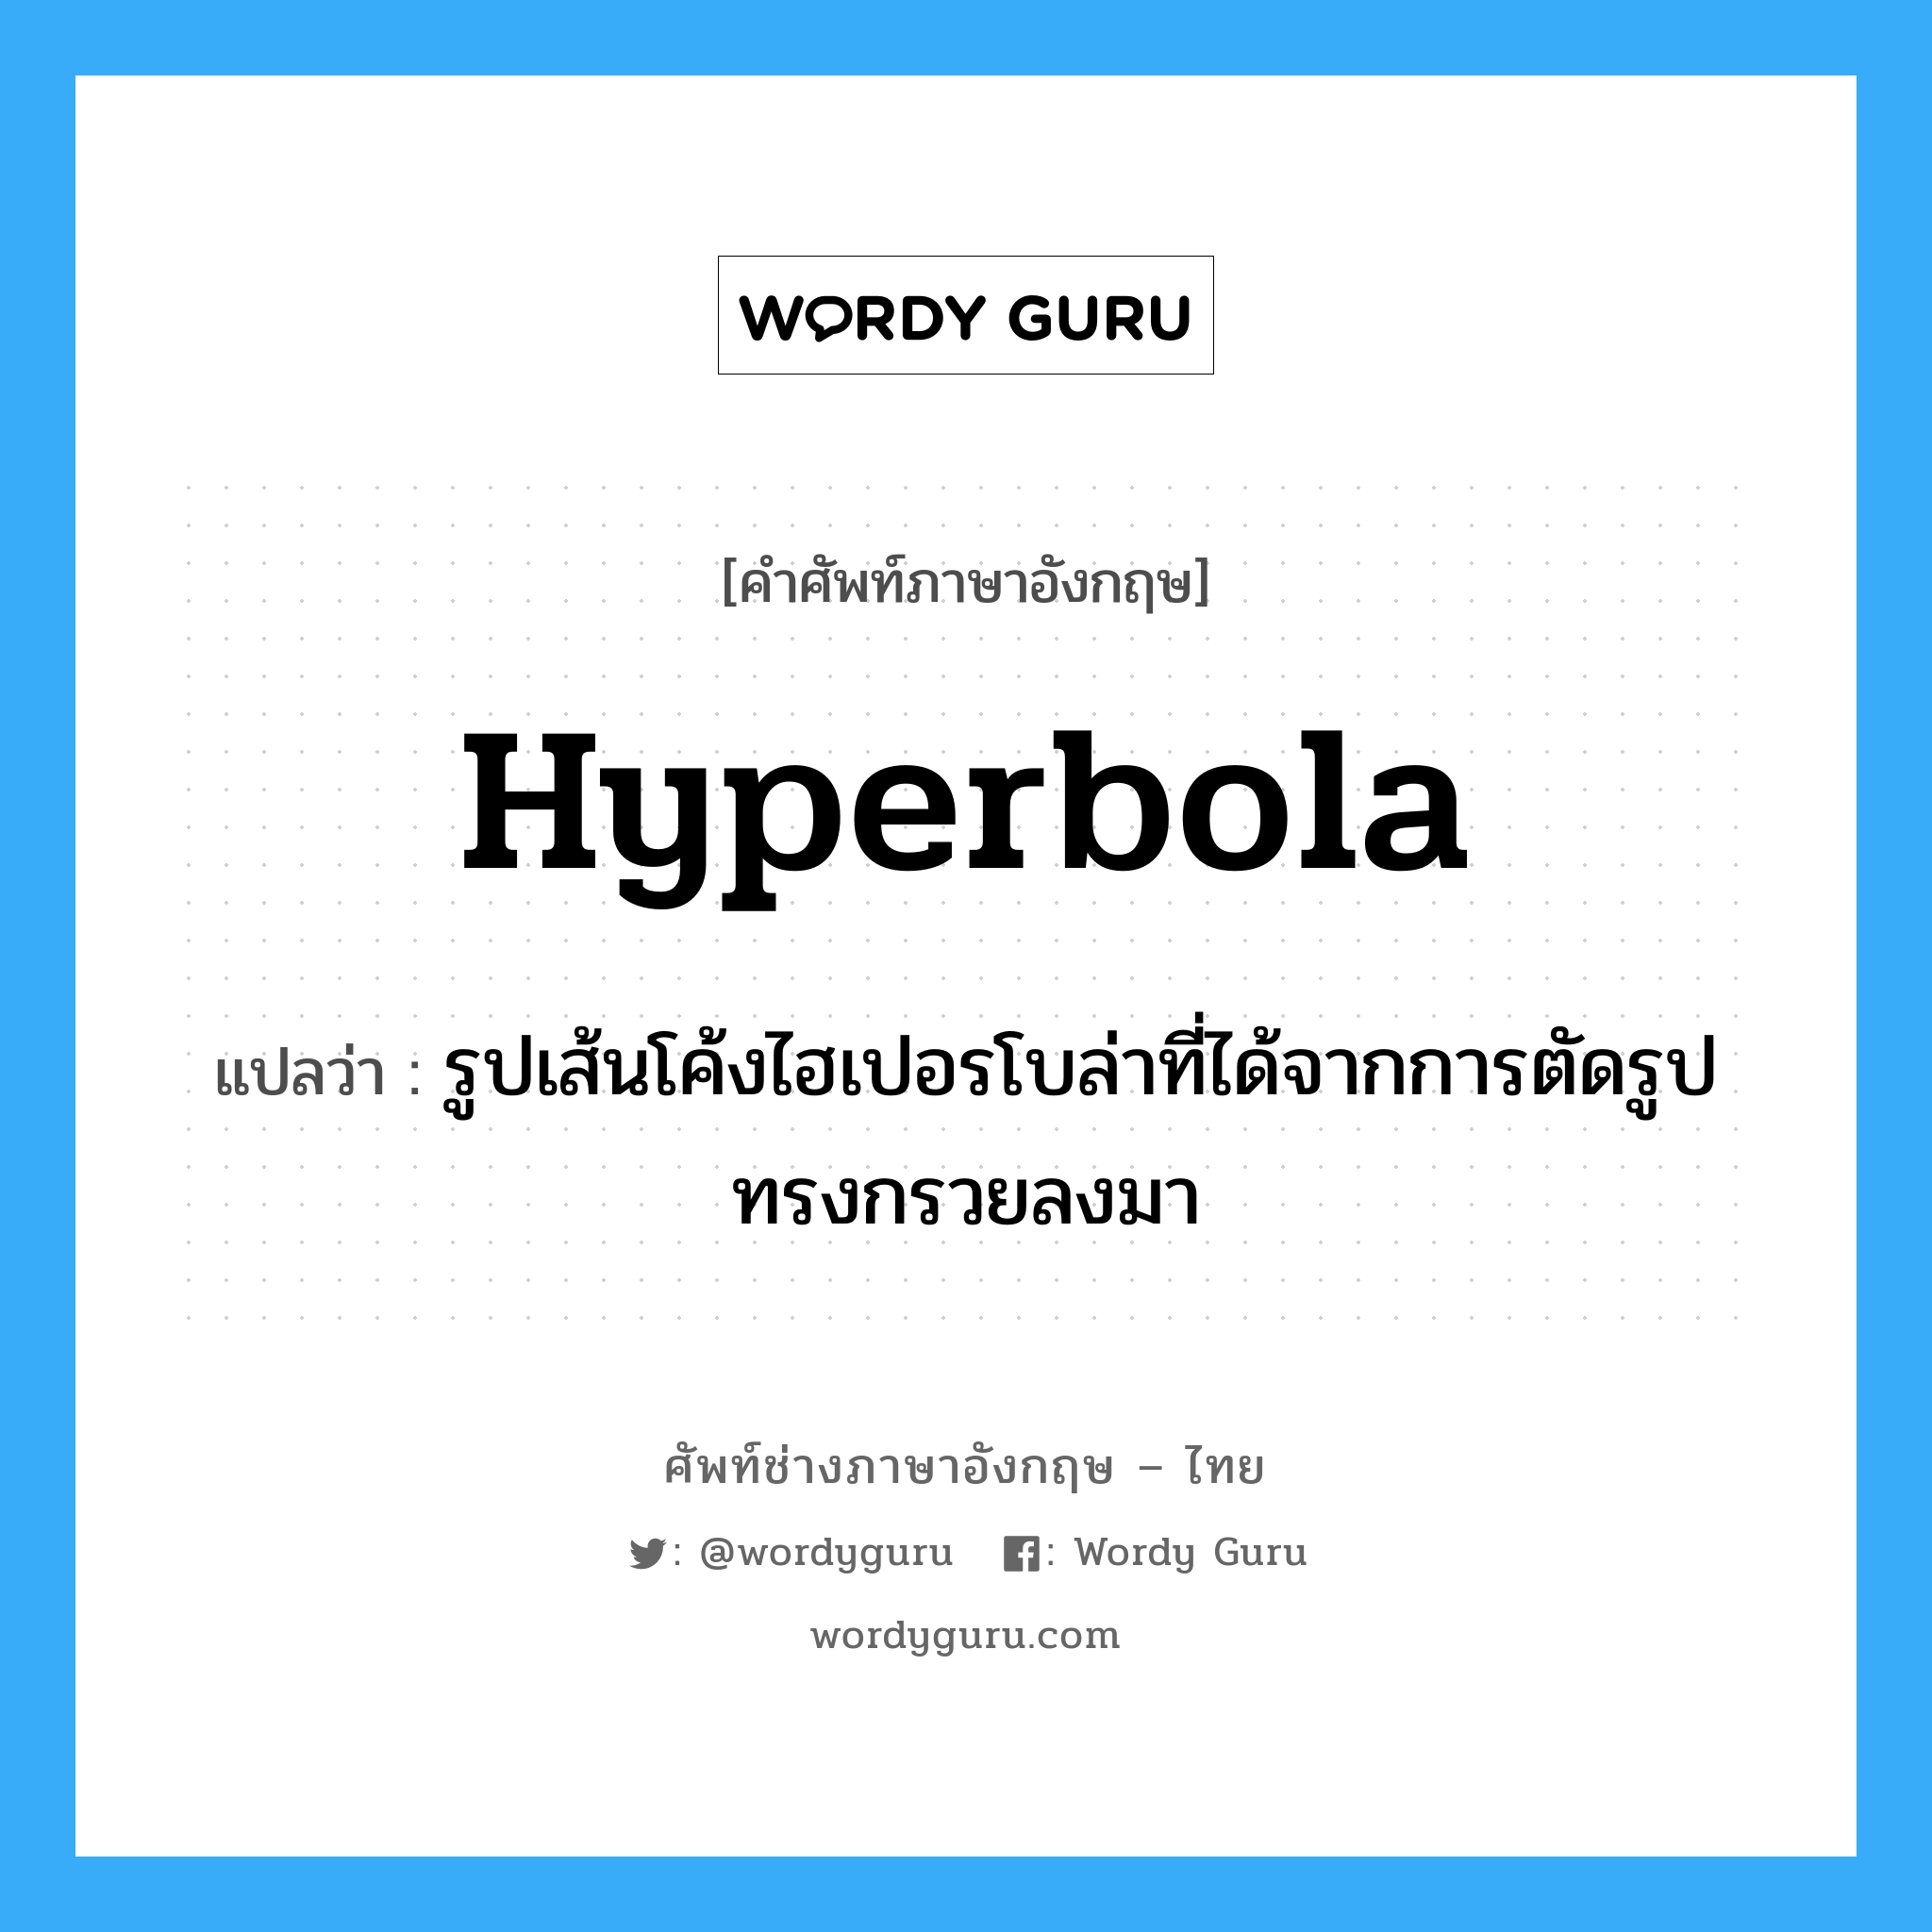 hyperbola แปลว่า?, คำศัพท์ช่างภาษาอังกฤษ - ไทย hyperbola คำศัพท์ภาษาอังกฤษ hyperbola แปลว่า รูปเส้นโค้งไฮเปอรโบล่าที่ได้จากการตัดรูปทรงกรวยลงมา